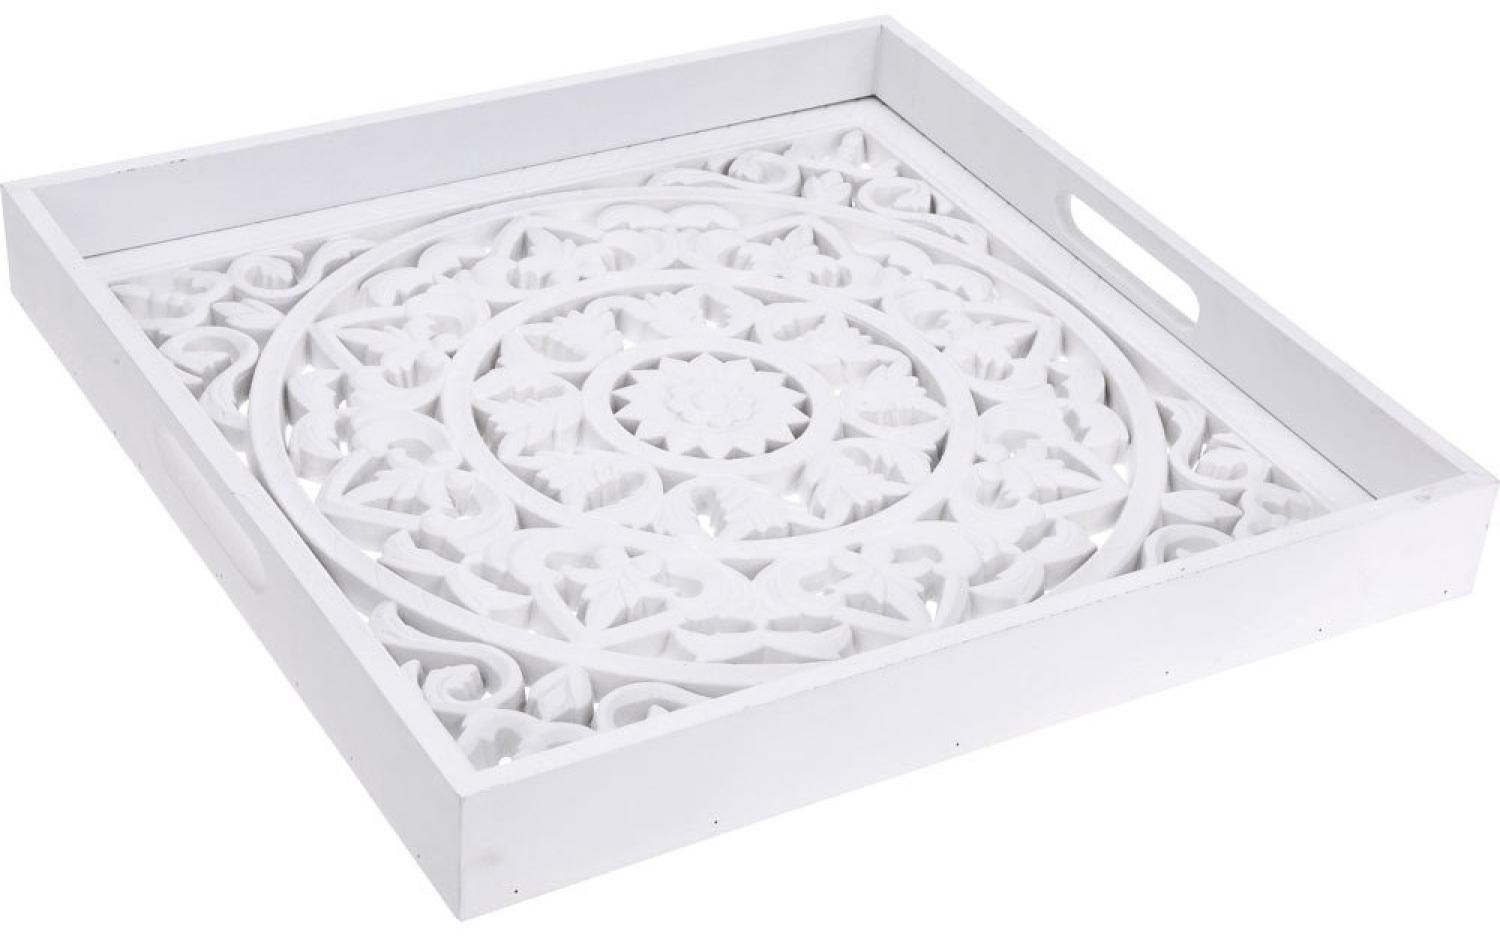 Quadratisches Serviertablett mit dekorativem Boden, dekoratives Holztablett in weißer Farbe Bild 1